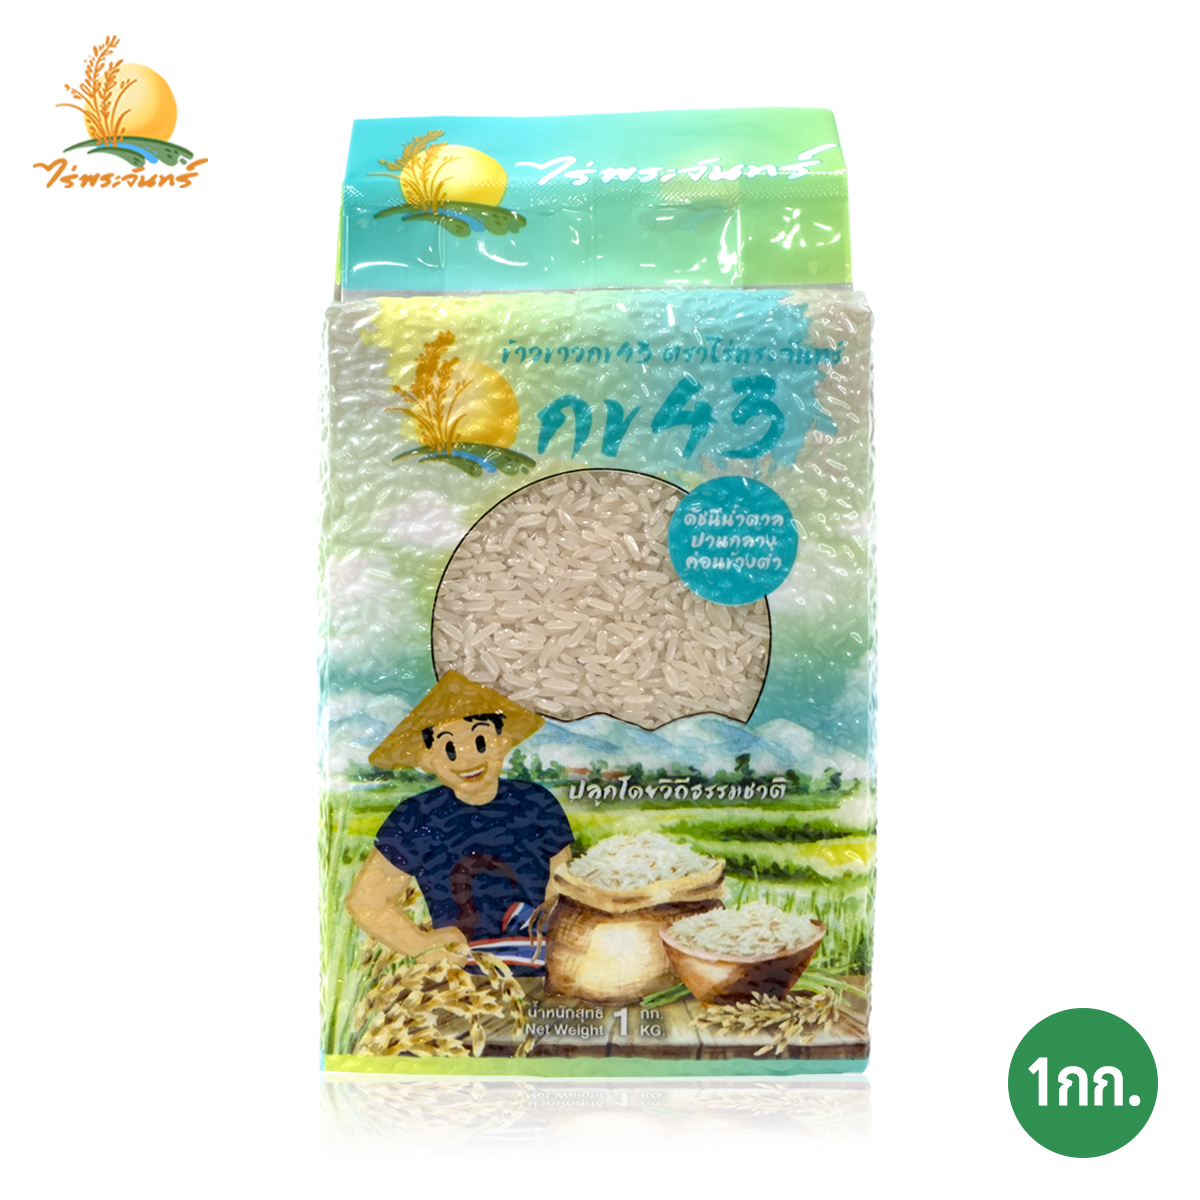 ข้าวขาว กข43 แท้ 100%  บรรจุ 1กก. ตราไร่พระจันทร์ moonricefarm ข้าวกข43 (ดัชนีน้ำตาลต่ำ 泰国大米品种编号43 / RD43 Rice varietie Low GI) ปลูกโดยวิถีธรรมชาติ